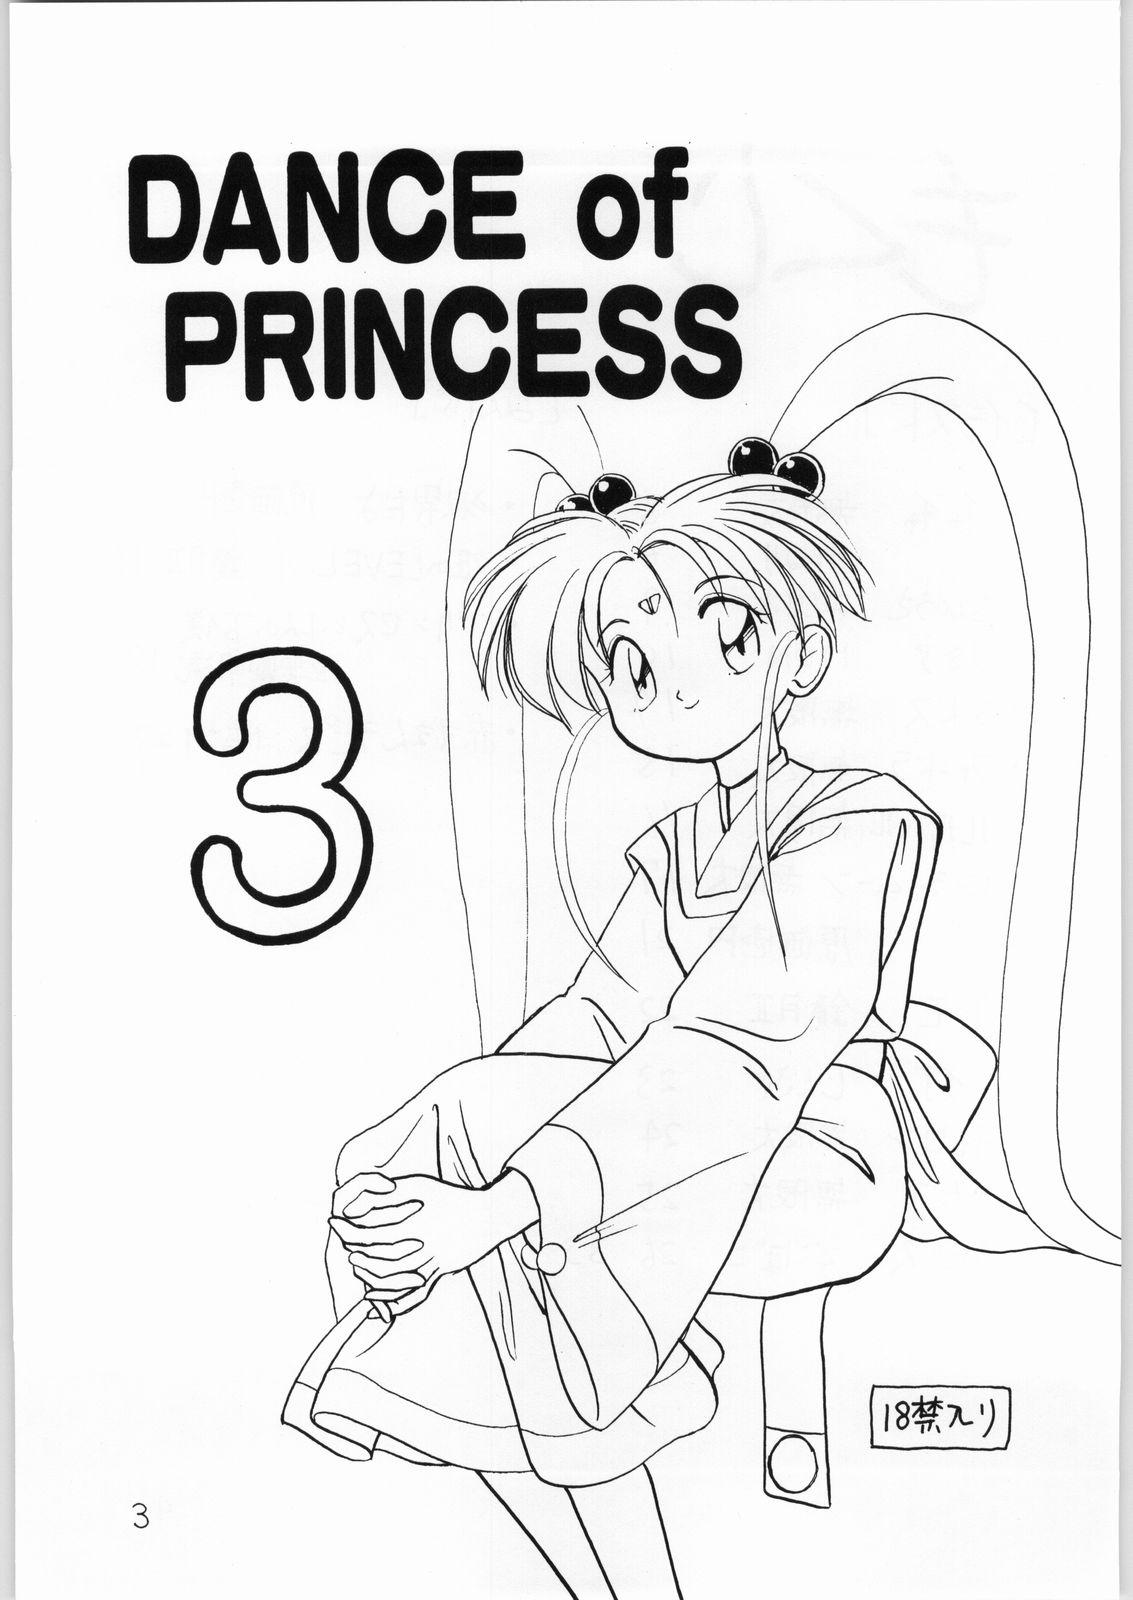 Putita Dance of Princess 3 - Sailor moon Tenchi muyo Akazukin cha cha Minky momo Ng knight lamune and 40 Stroking - Page 2